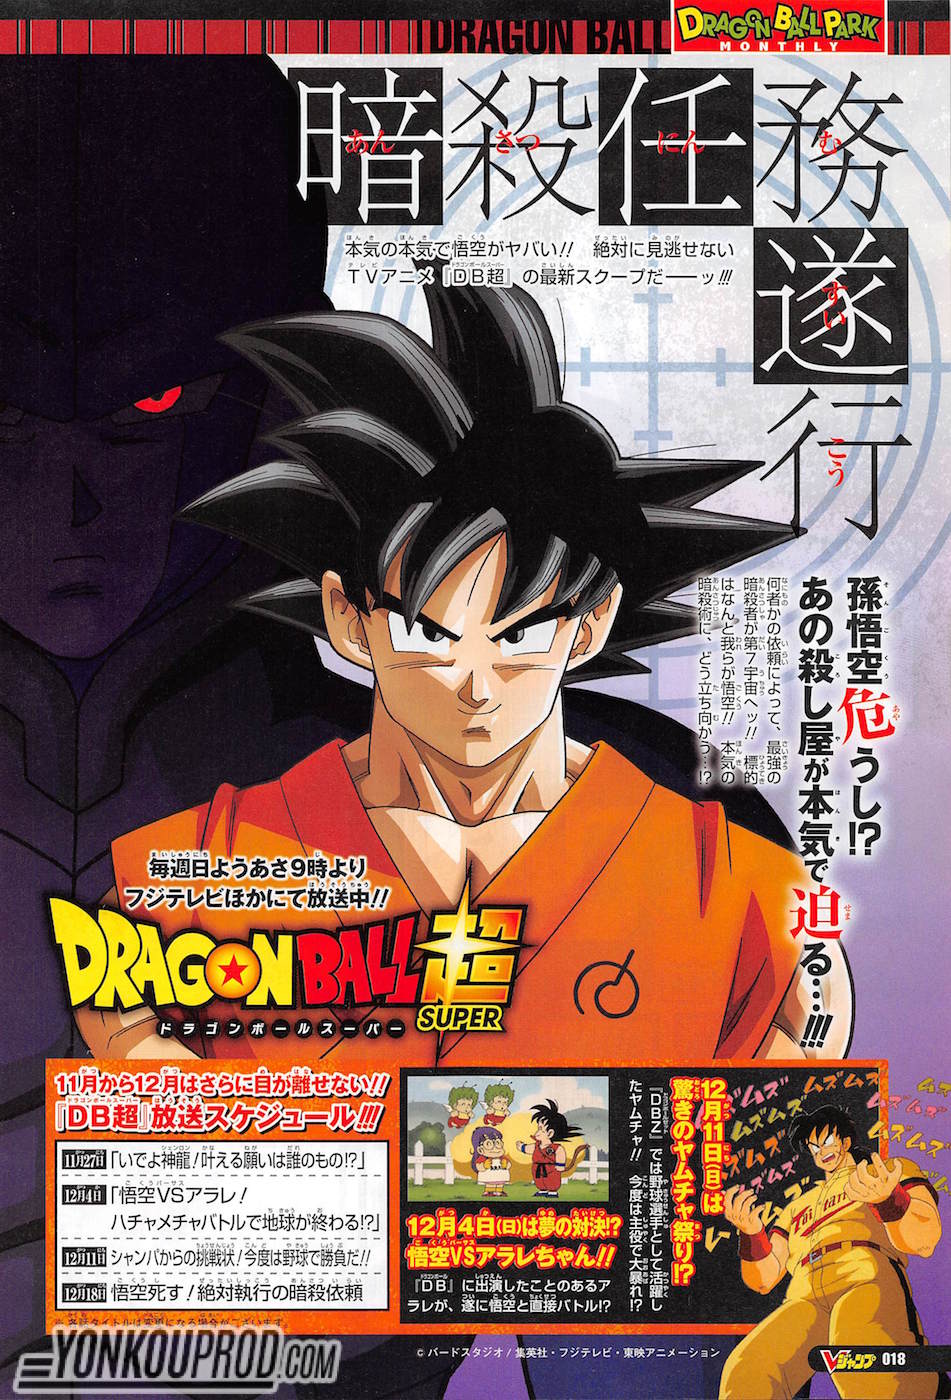 Nueva saga de Dragon Ball Super – Títulos capítulos 68, 69, 70 y 71